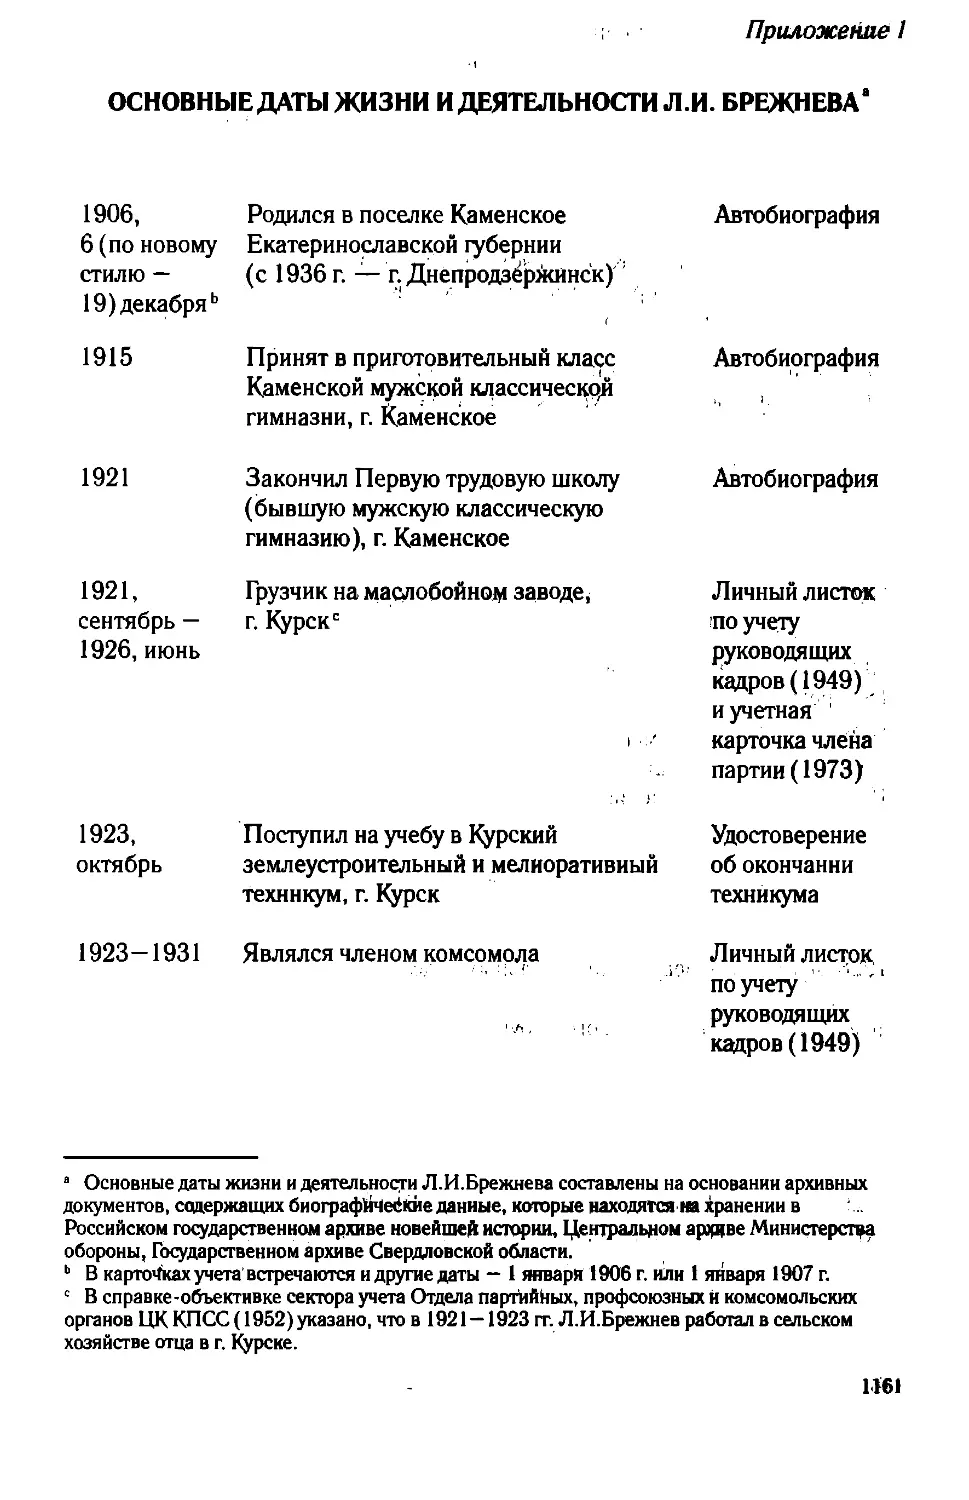 Приложение 1. Основные даты жизни и деятельности Л.И. Брежнева